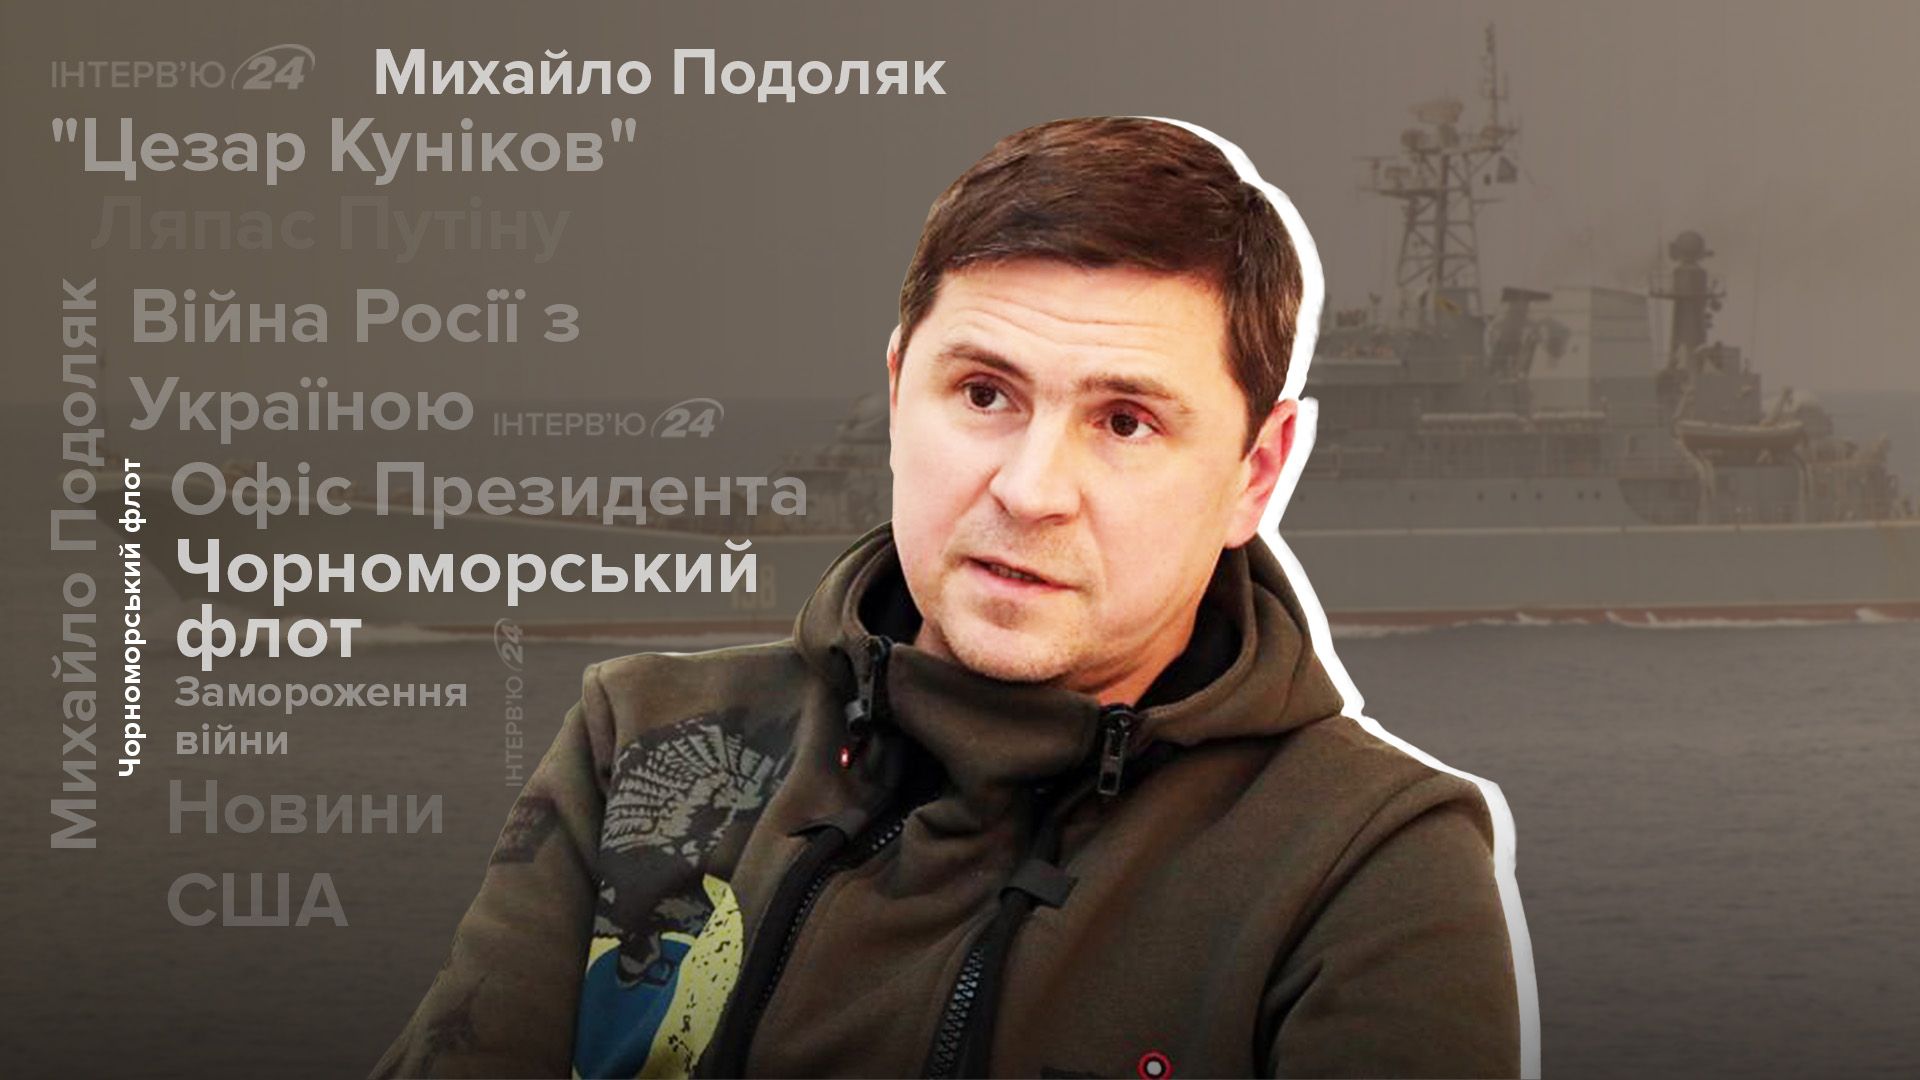 Уничтожение Черноморского флота - Цезарь Куников - интервью с Подоляком - 24 Канал